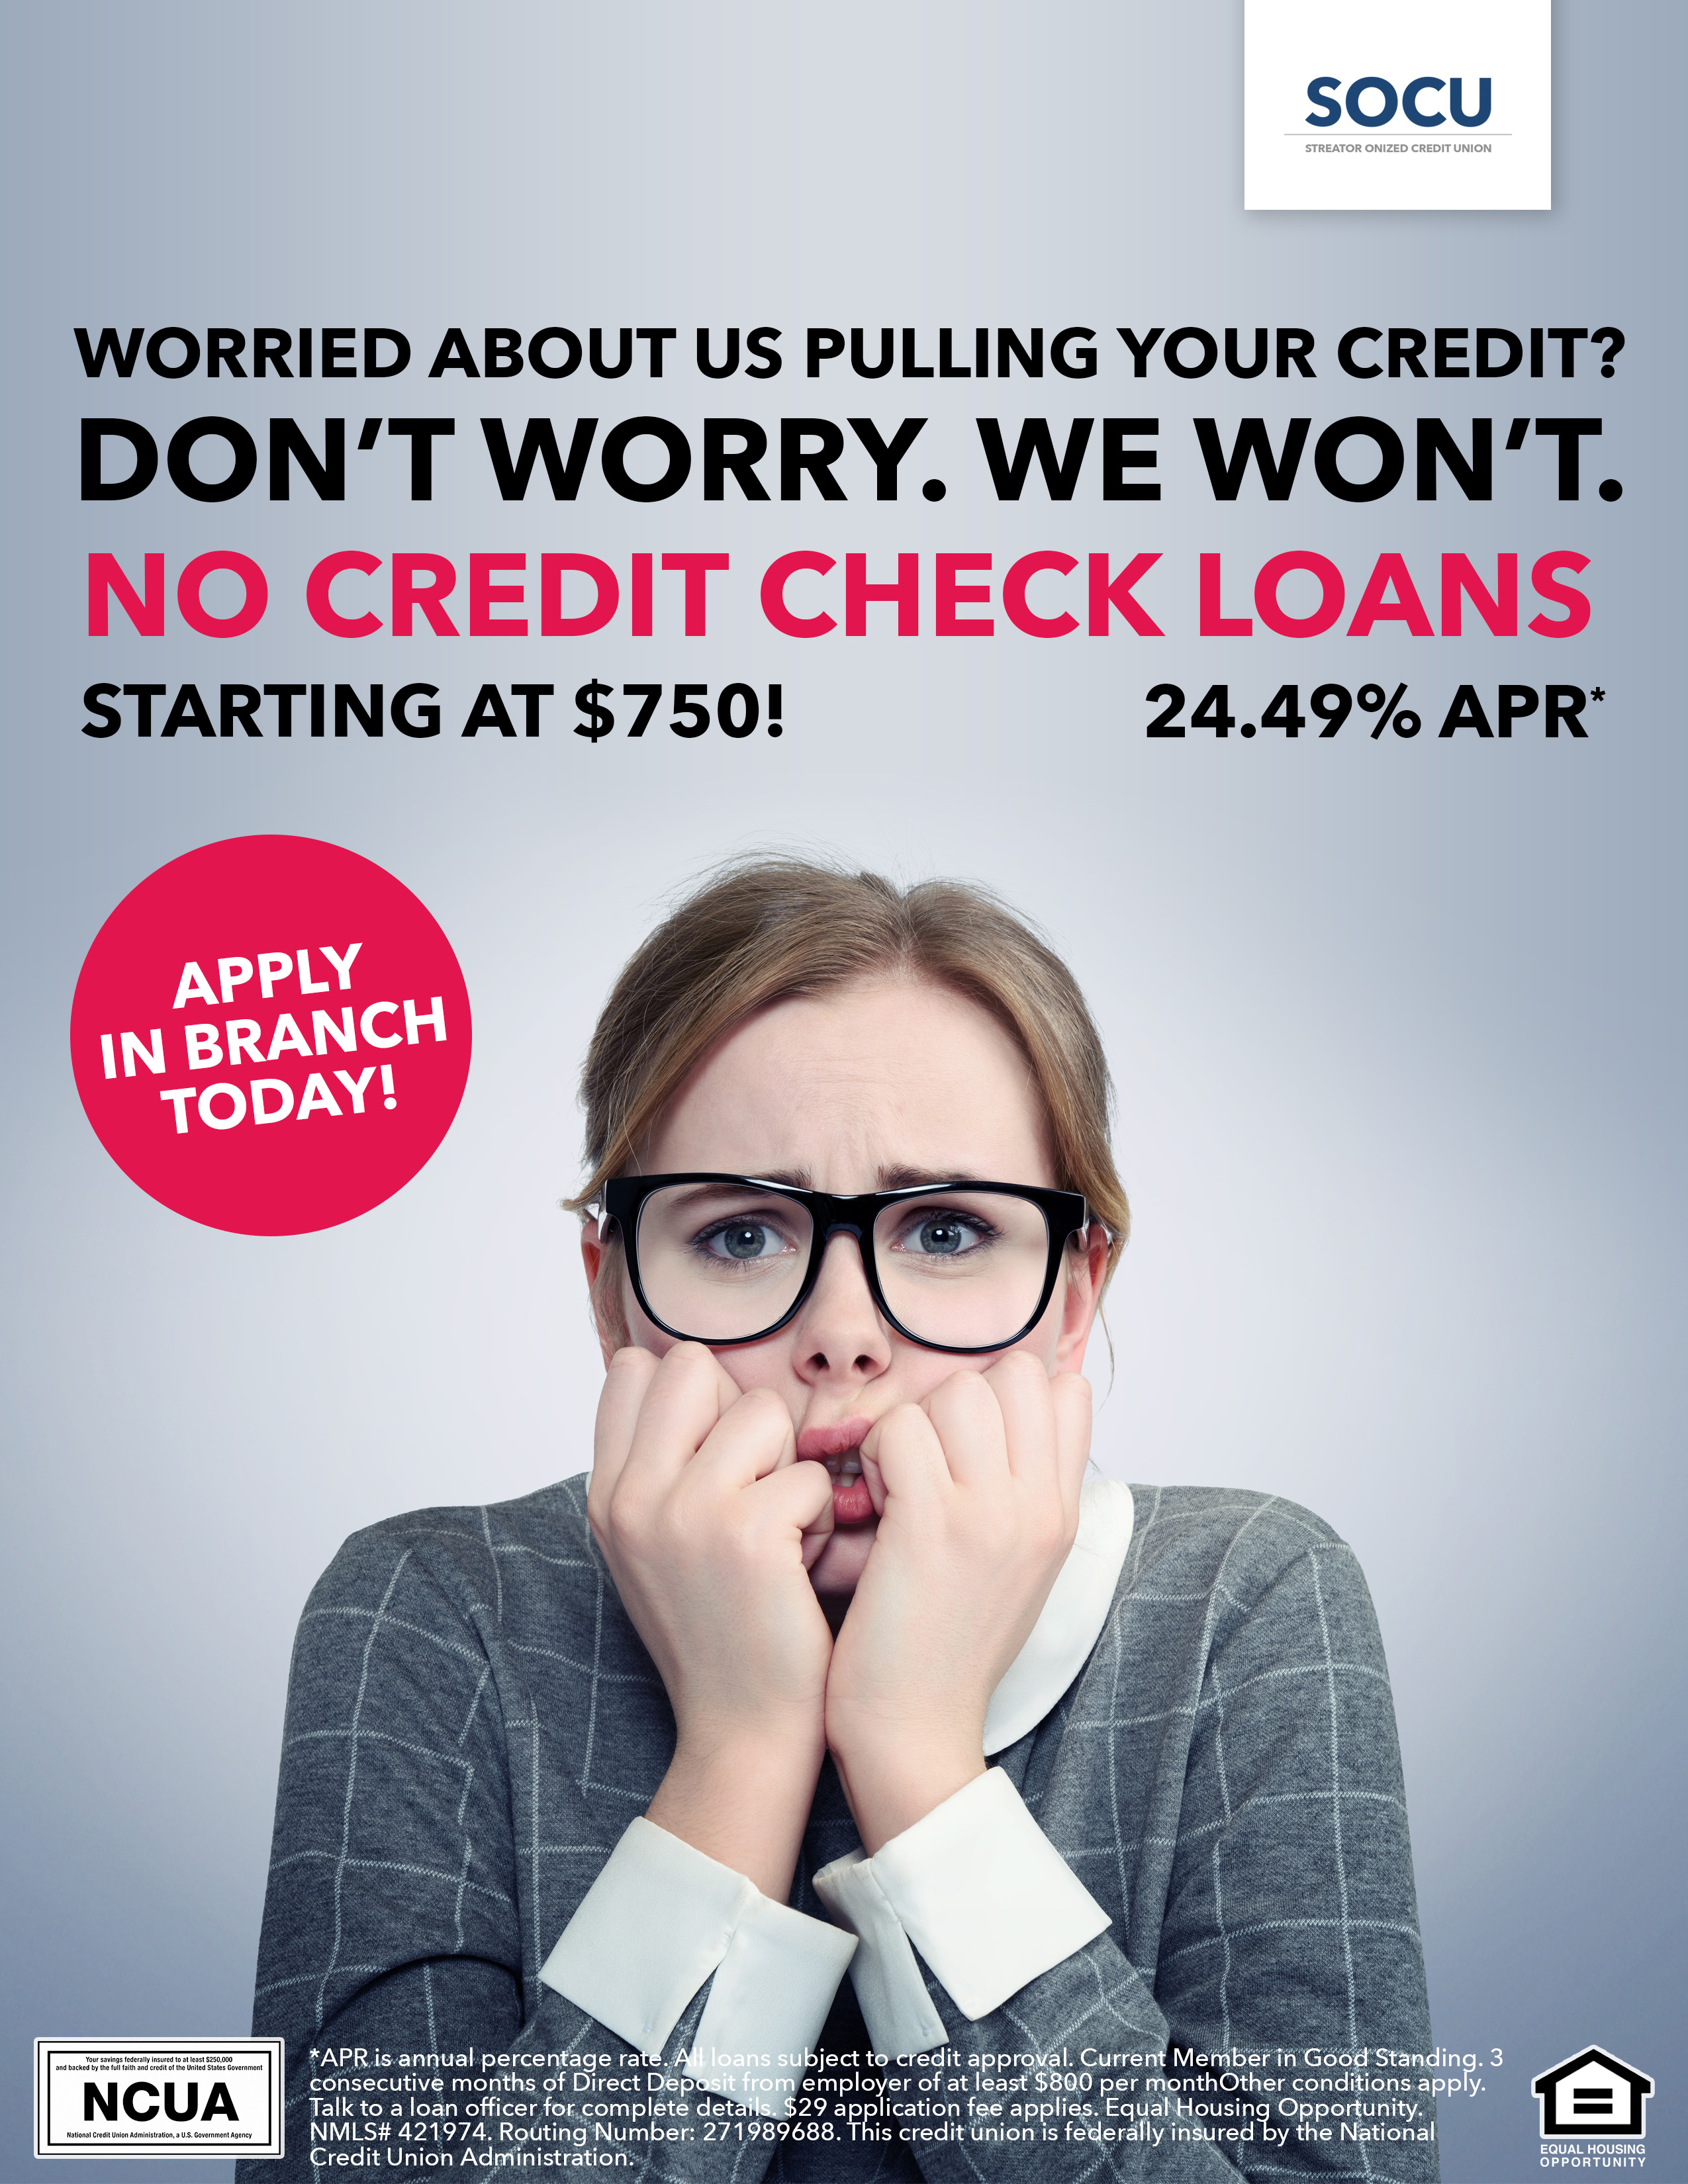 No Credit Check loans